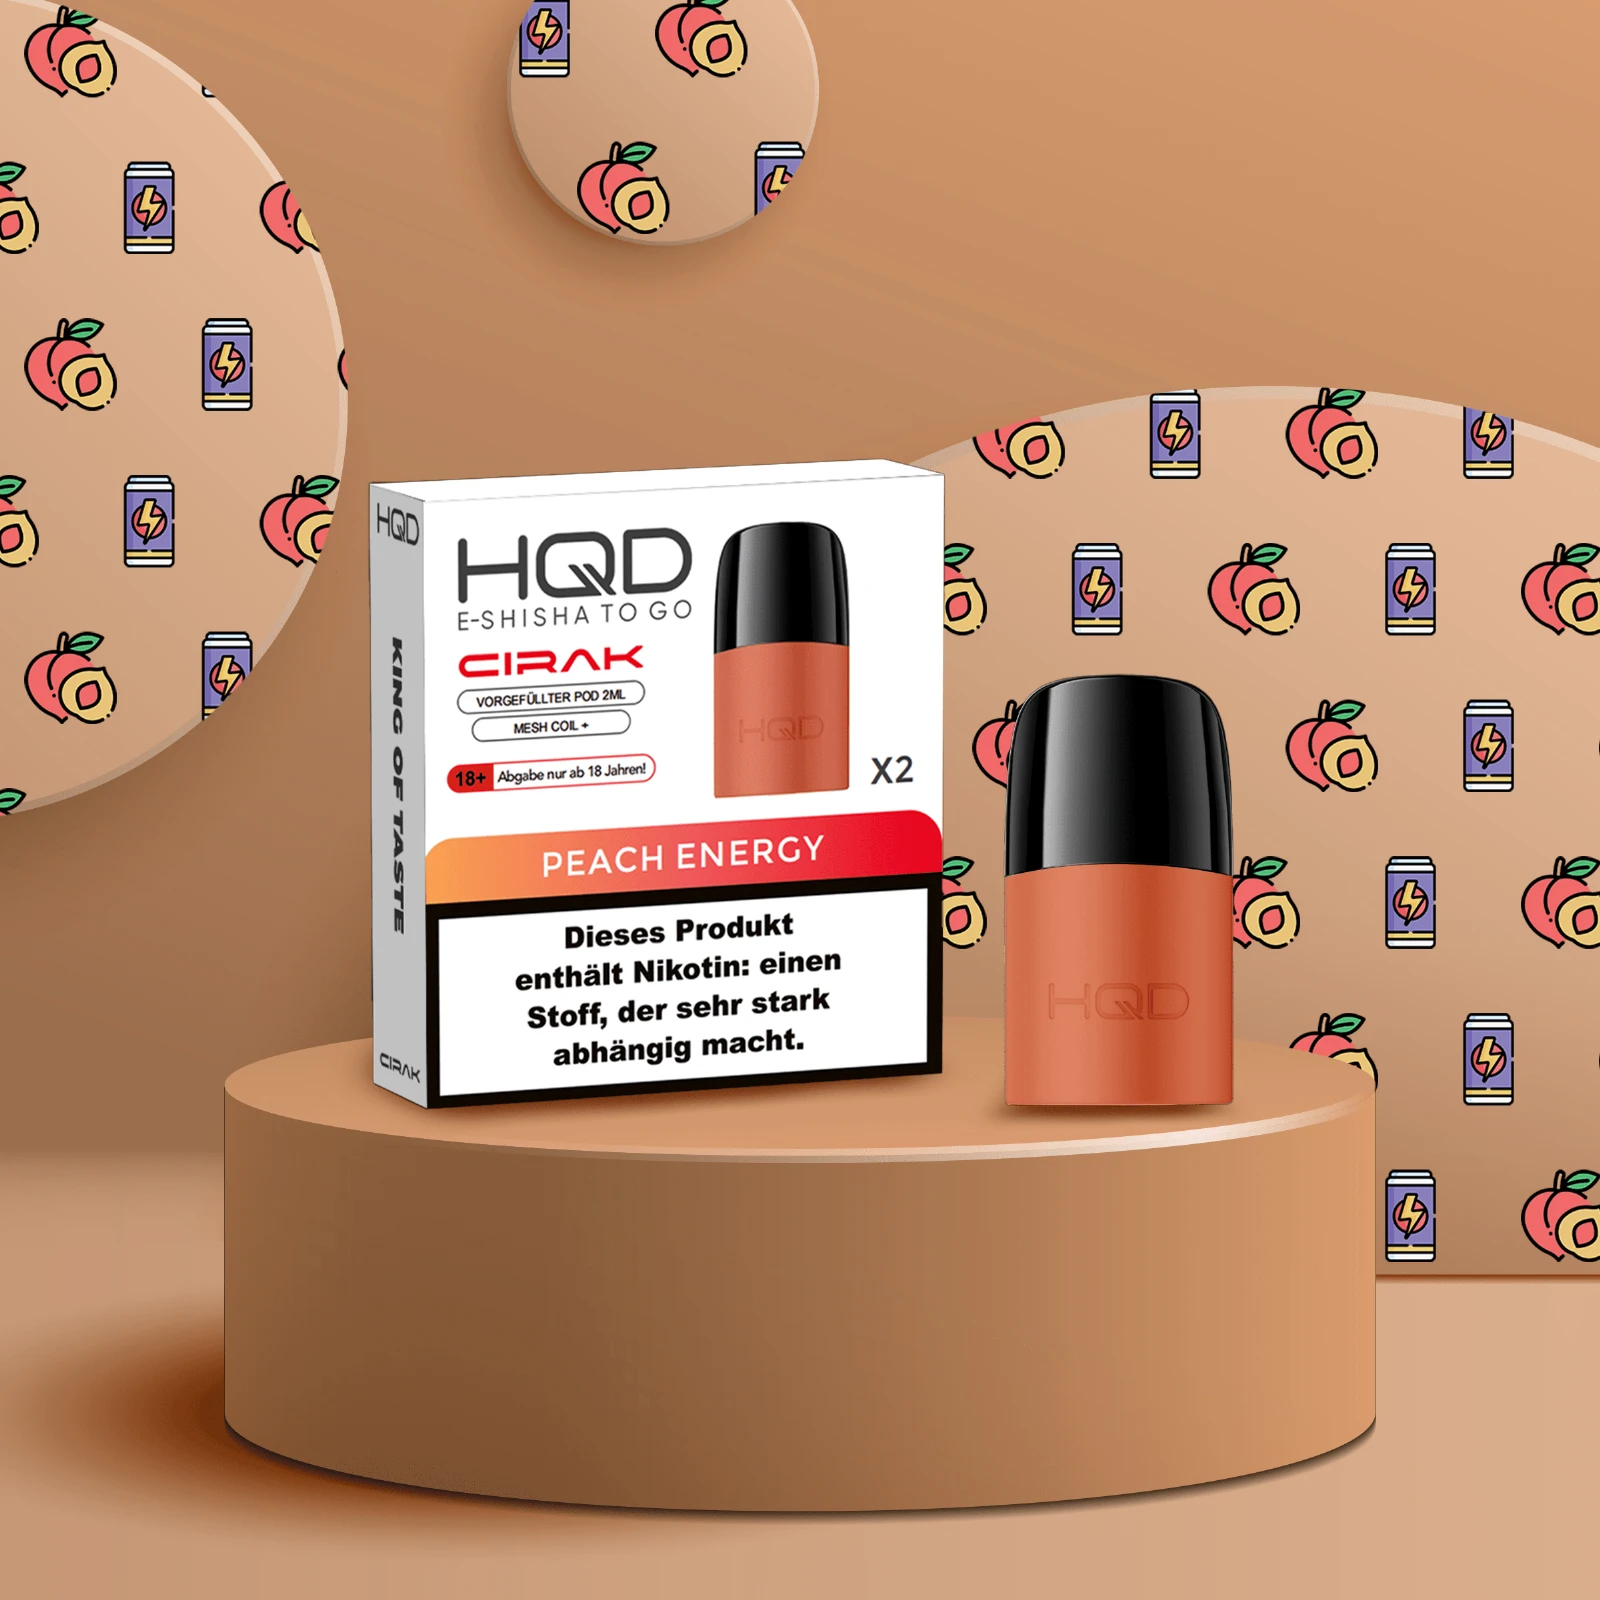 HQD - Cirak - Prefilled Pod - Peach Energy | E-Liquid Vape Sorten günstig kaufen1